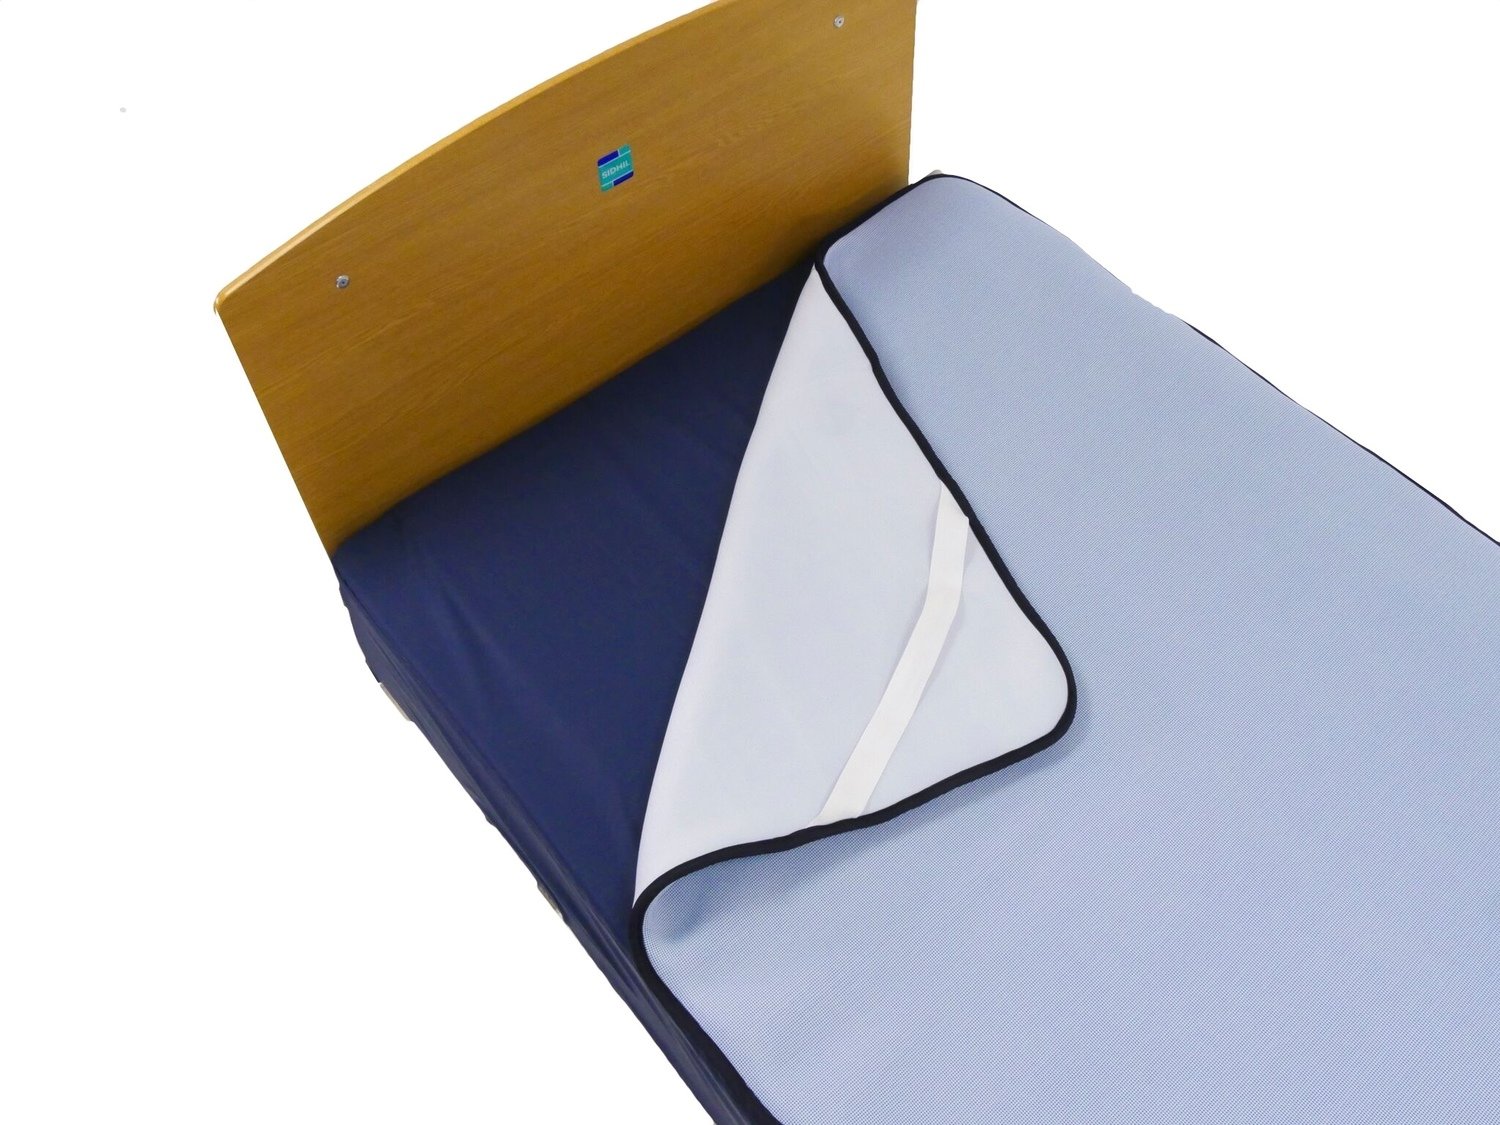 pressure sore mattress cover